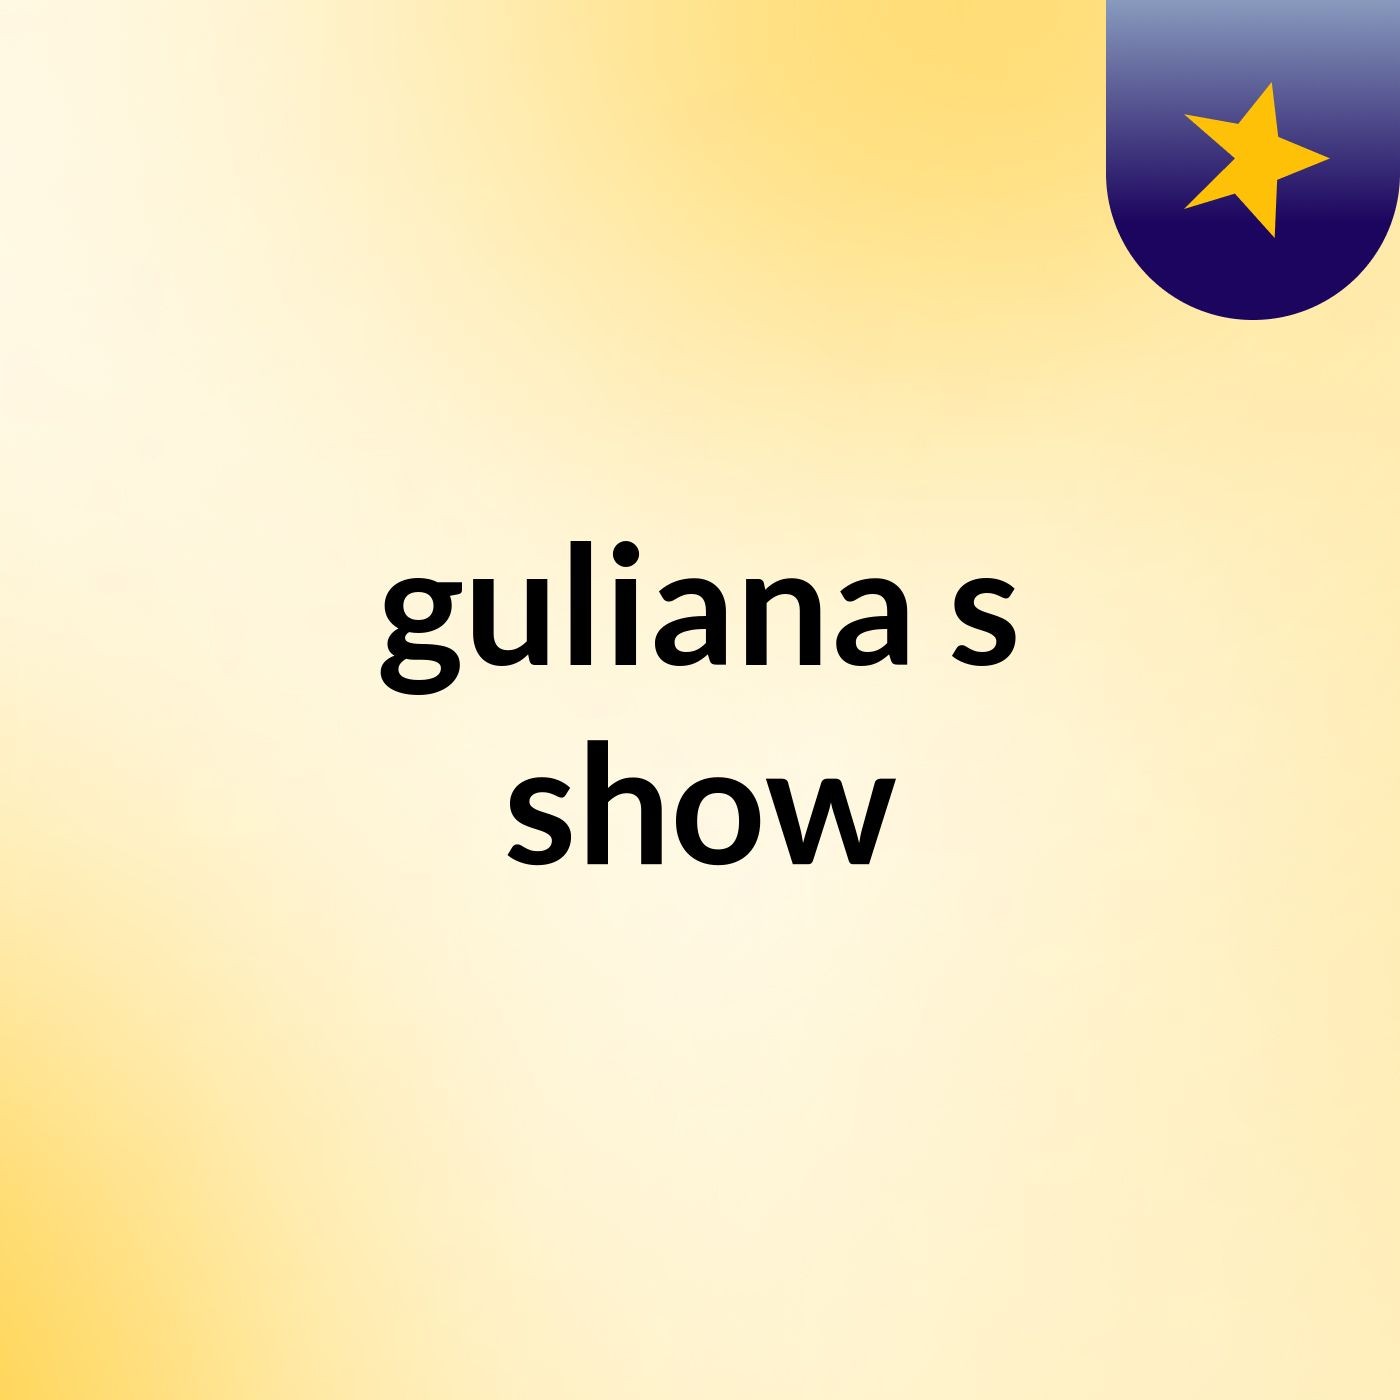 guliana's show